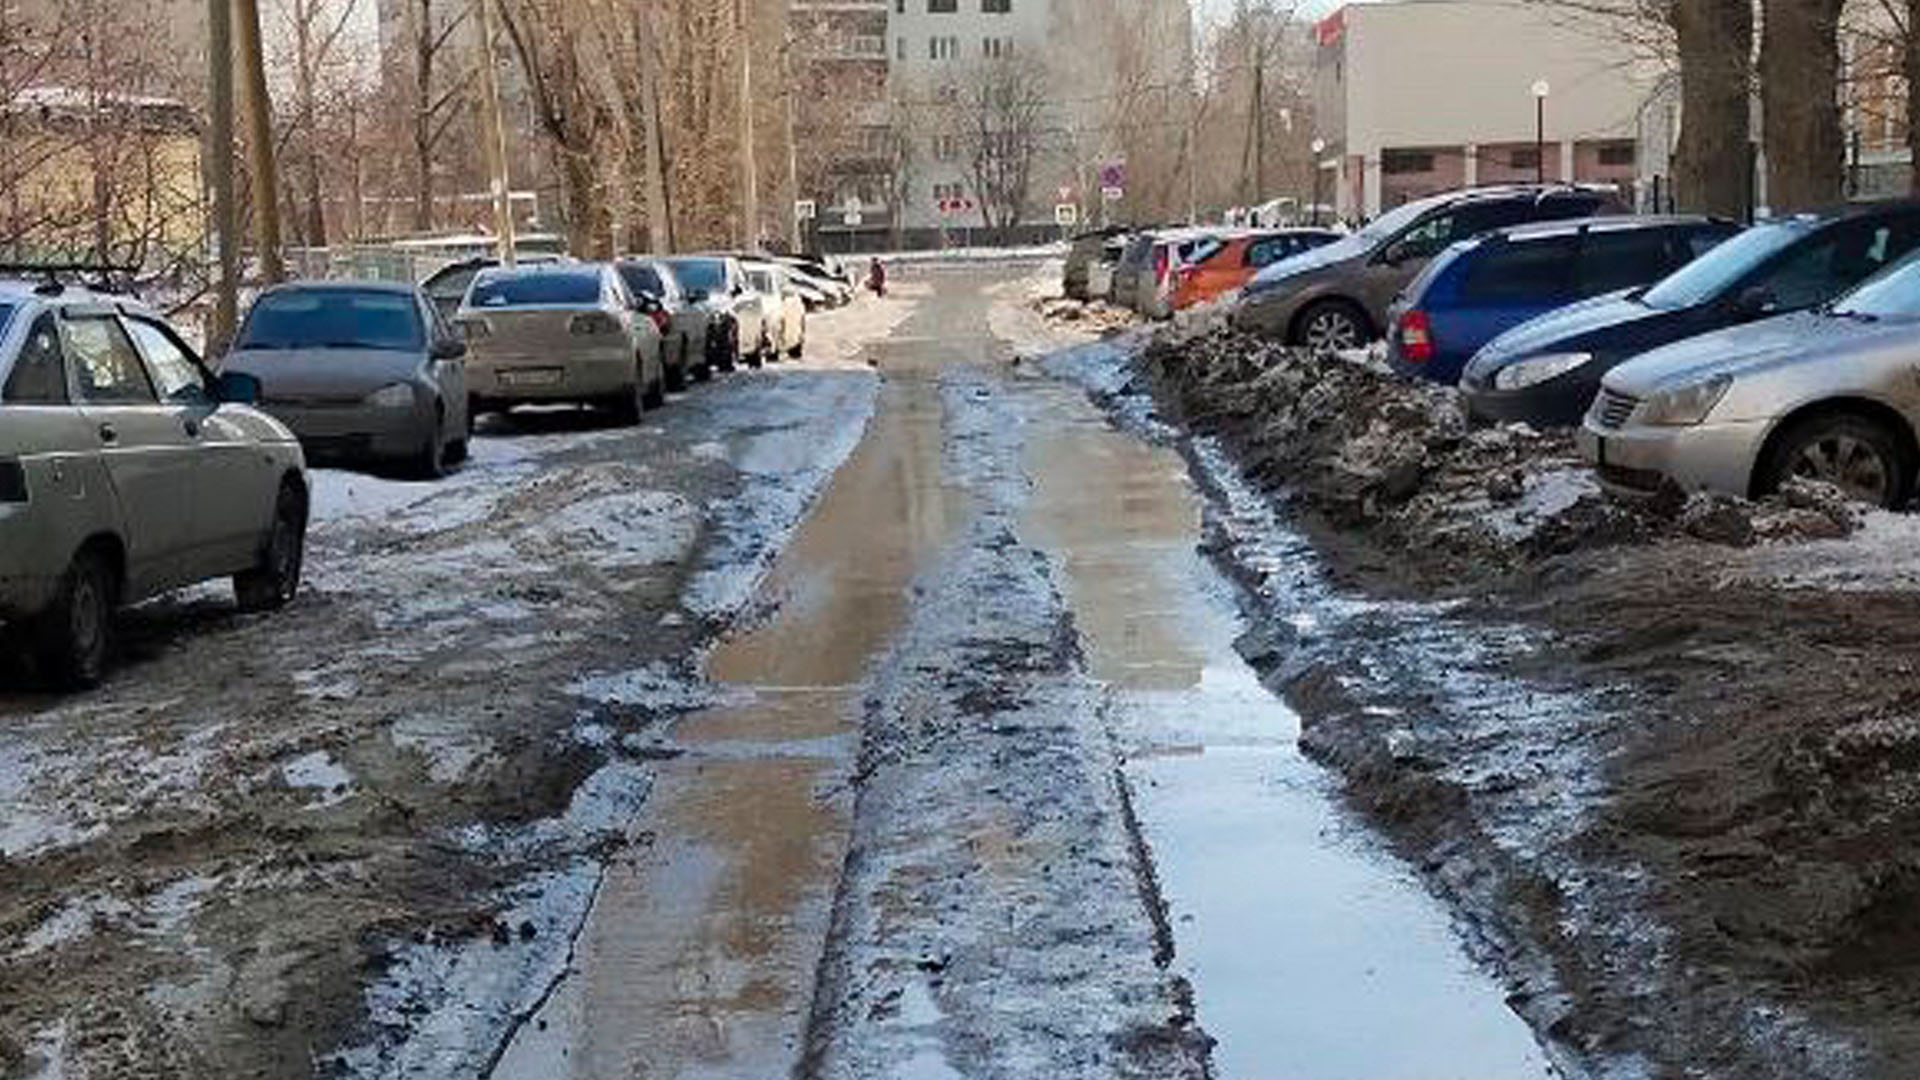 Пробки утром и вечером на улице Калинина в Екатеринбурге из-за снега и припаркованных машин